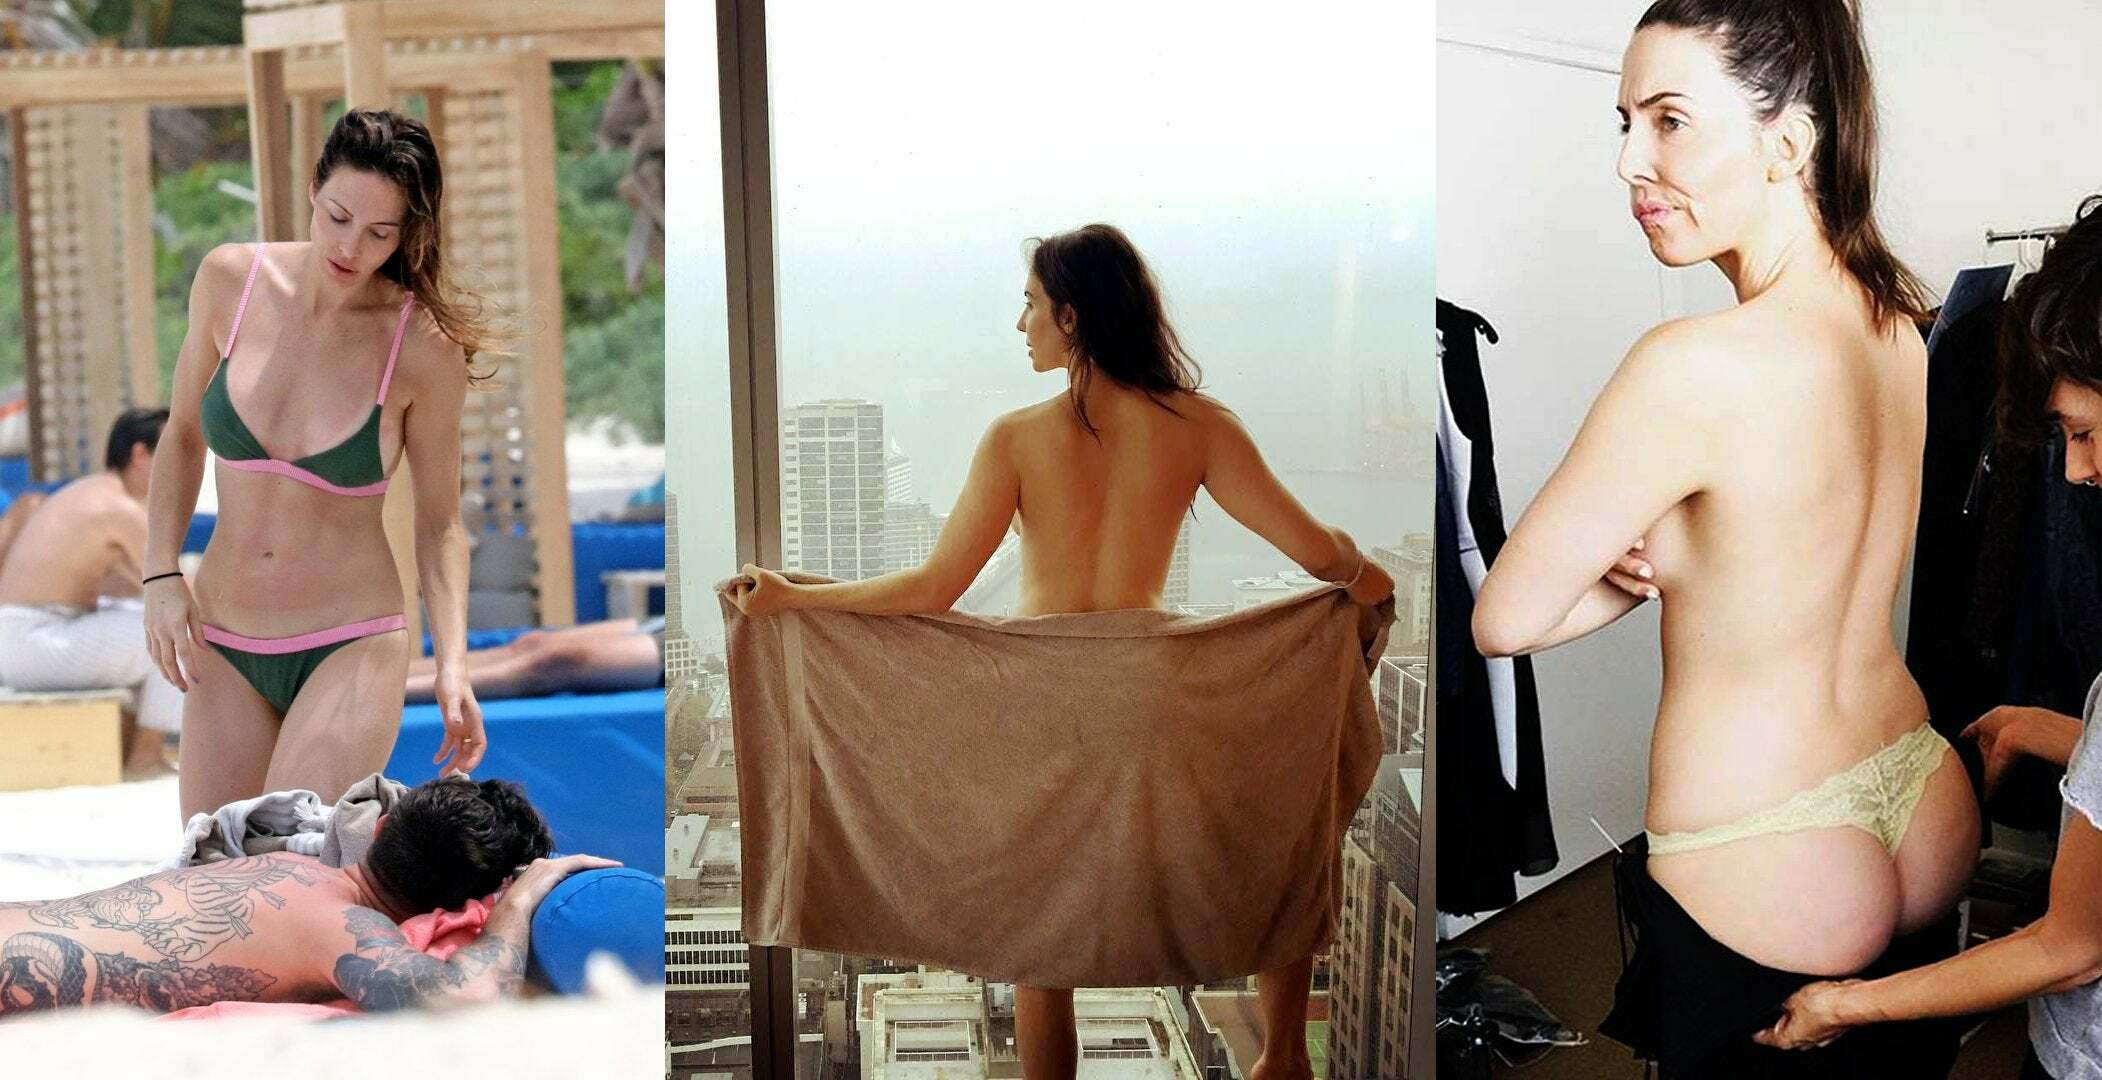 Whitney cummings nude photos.